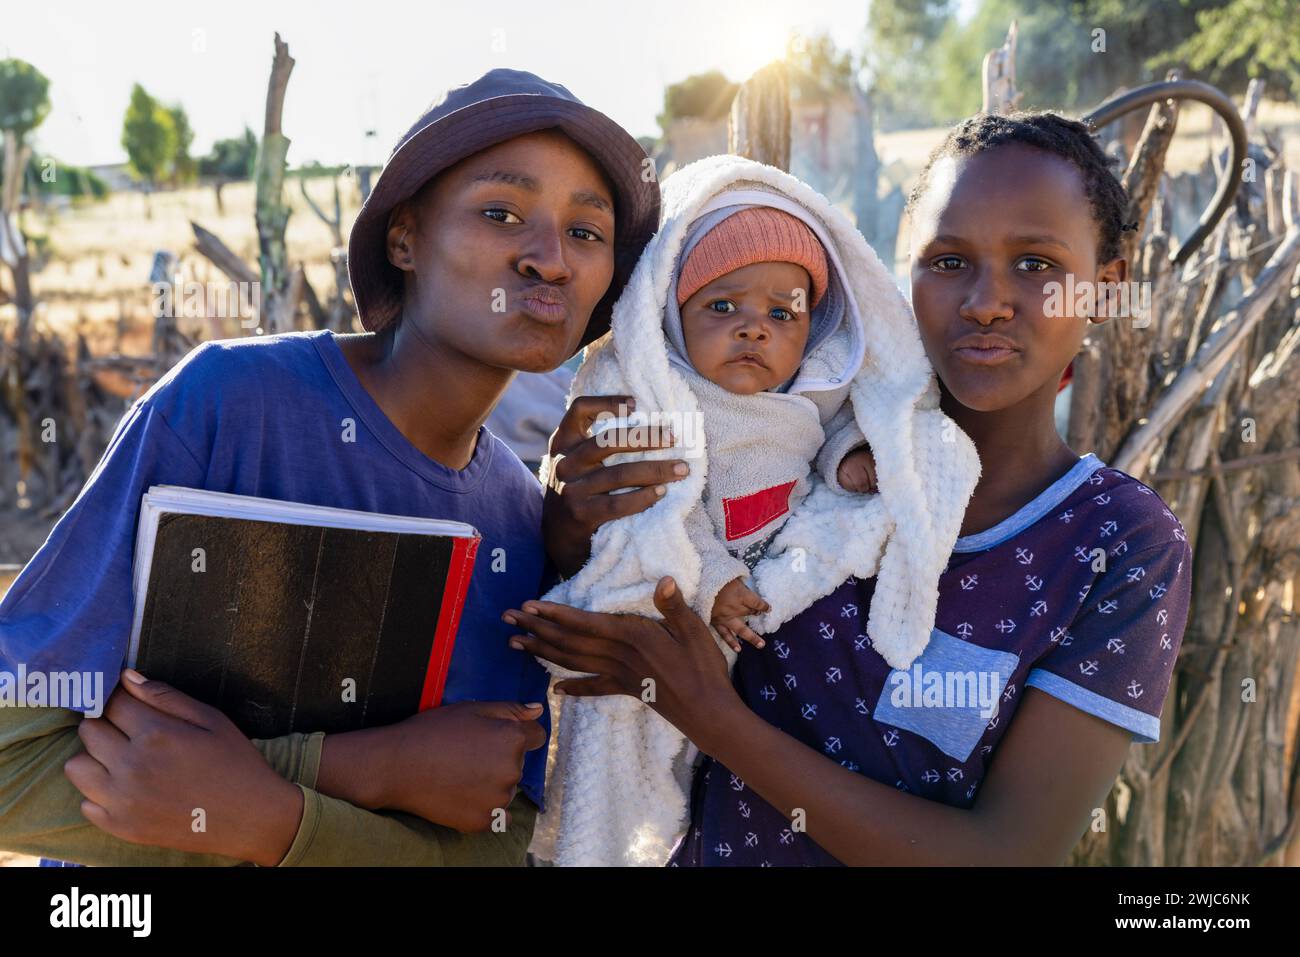 villaggio, ragazzi della scuola africana con un bambino appena nato e libri scolastici in mano Foto Stock